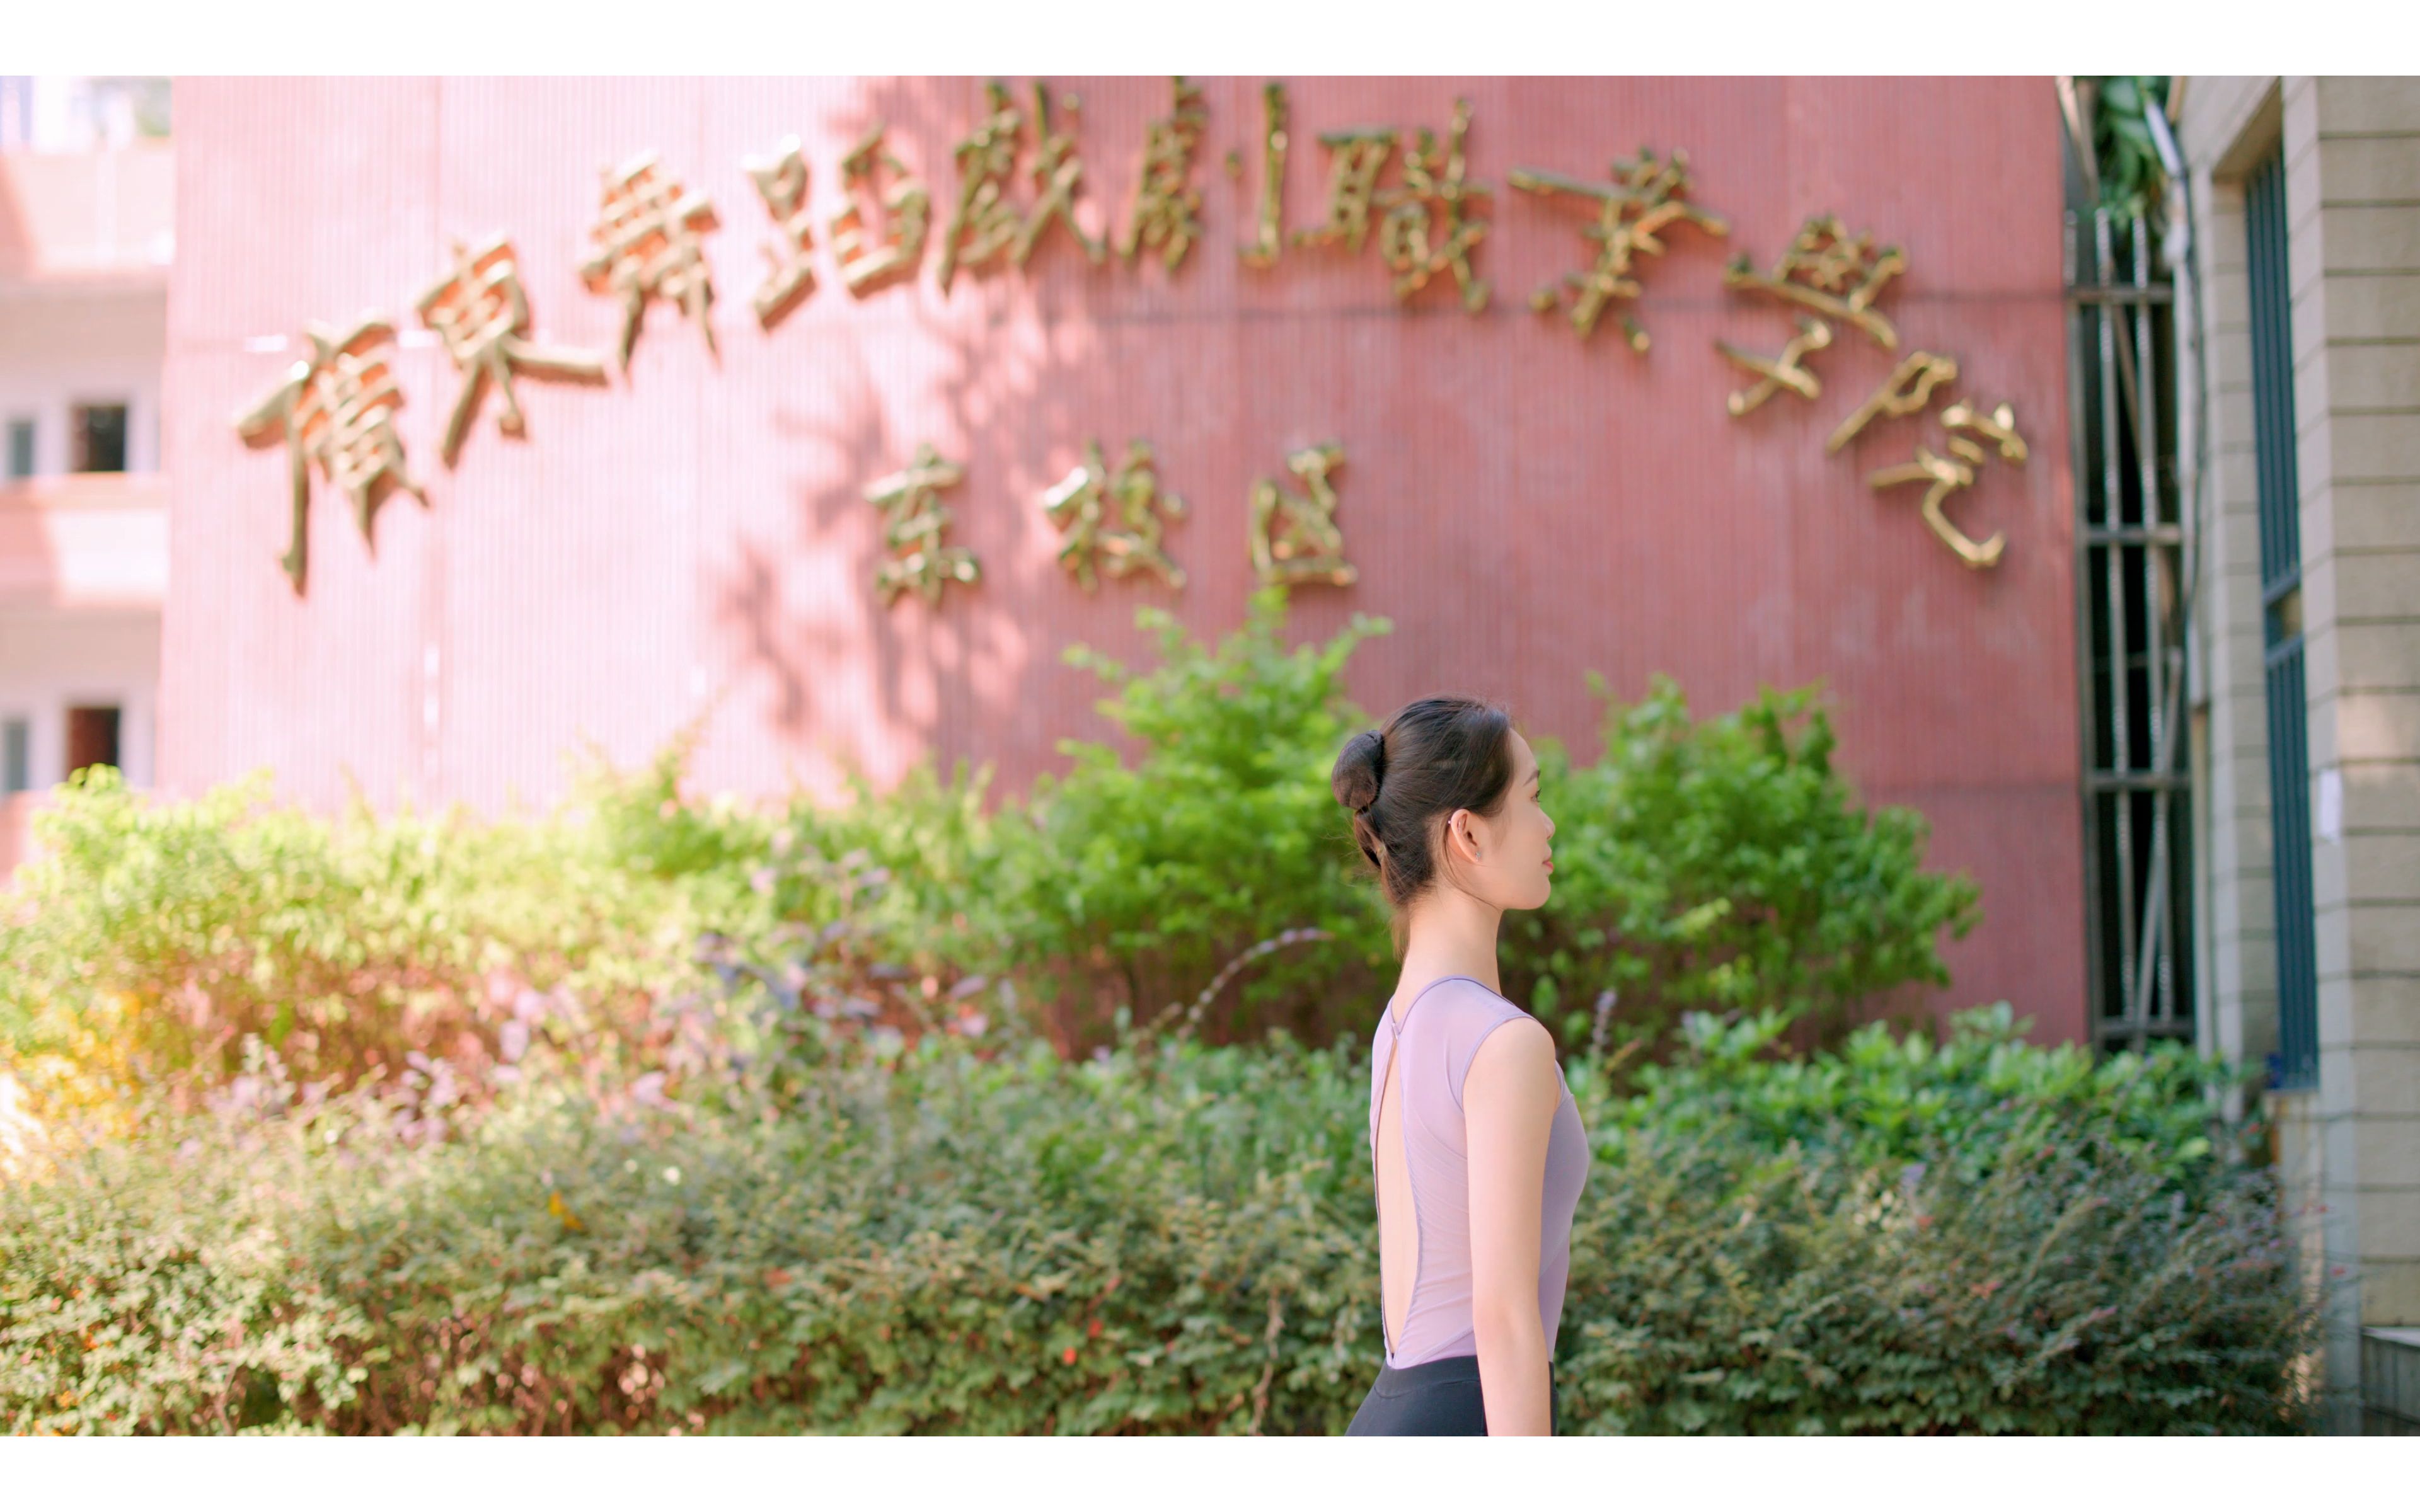 广东舞蹈戏剧职业学院2018级五年一贯制舞蹈表演专业毕业晚会宣传片